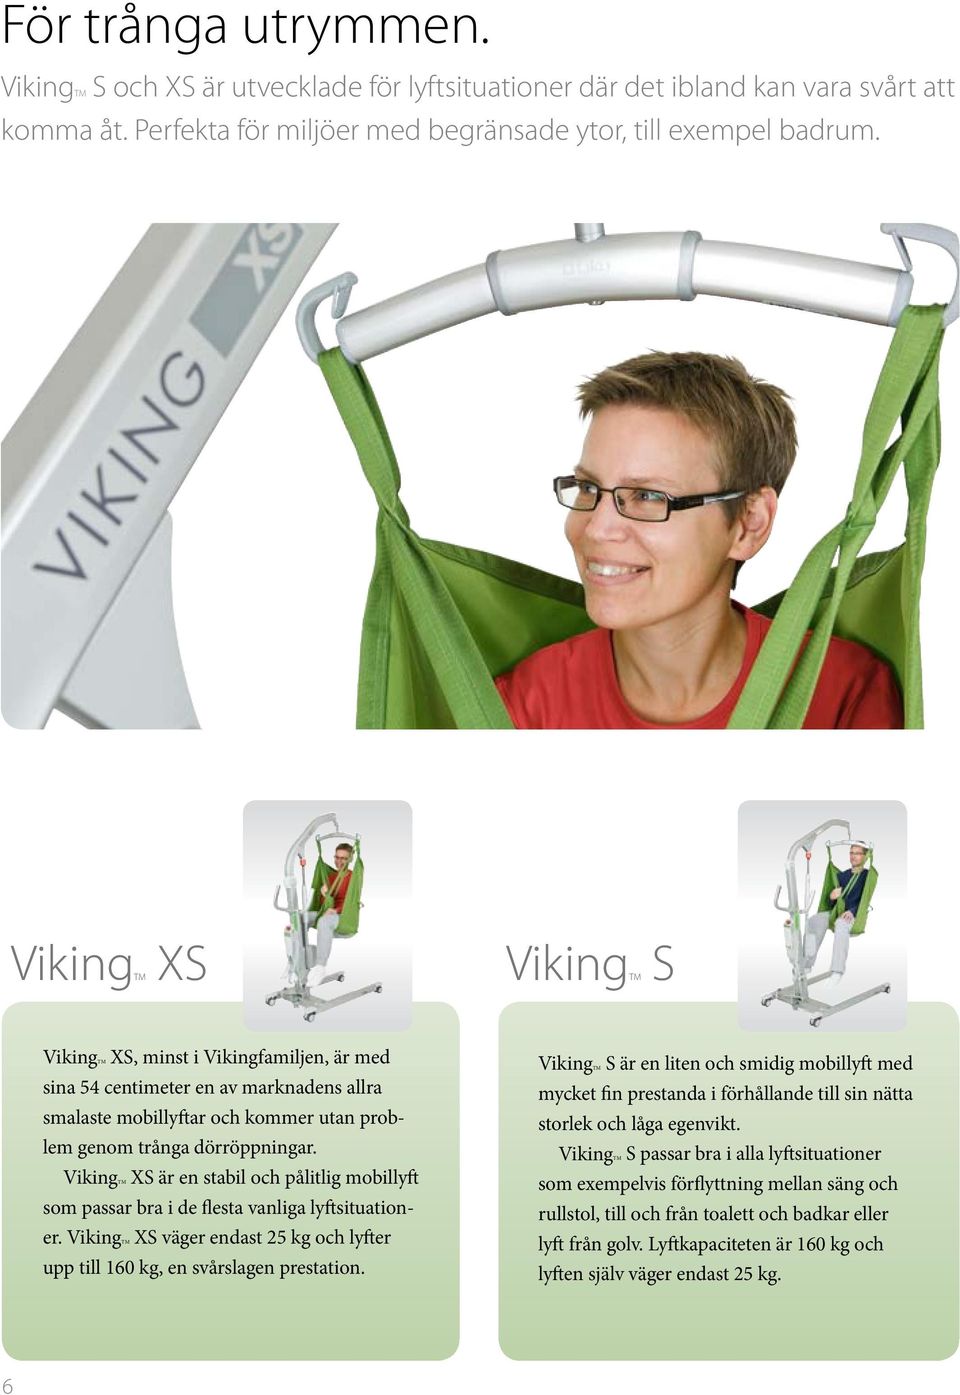 VikingTM XS är en stabil och pålitlig mobillyft som passar bra i de flesta vanliga lyftsituationer. VikingTM XS väger endast 25 kg och lyfter upp till 160 kg, en svårslagen prestation.